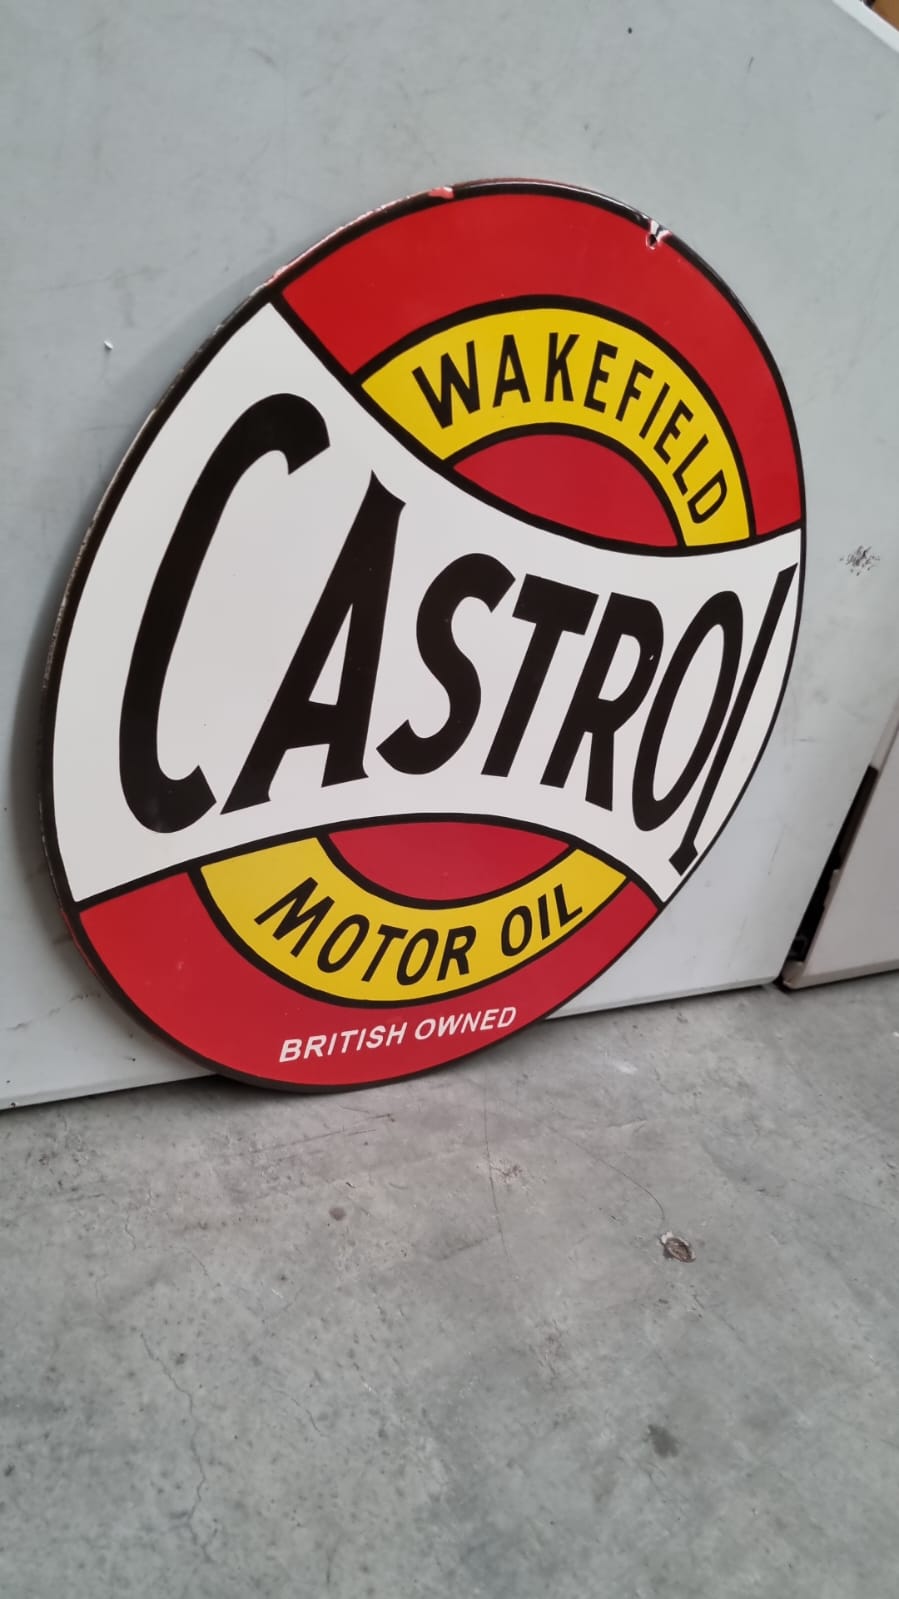 Castrol Motor Oil - ( ESC160 ) - Vintage World Australia - 1